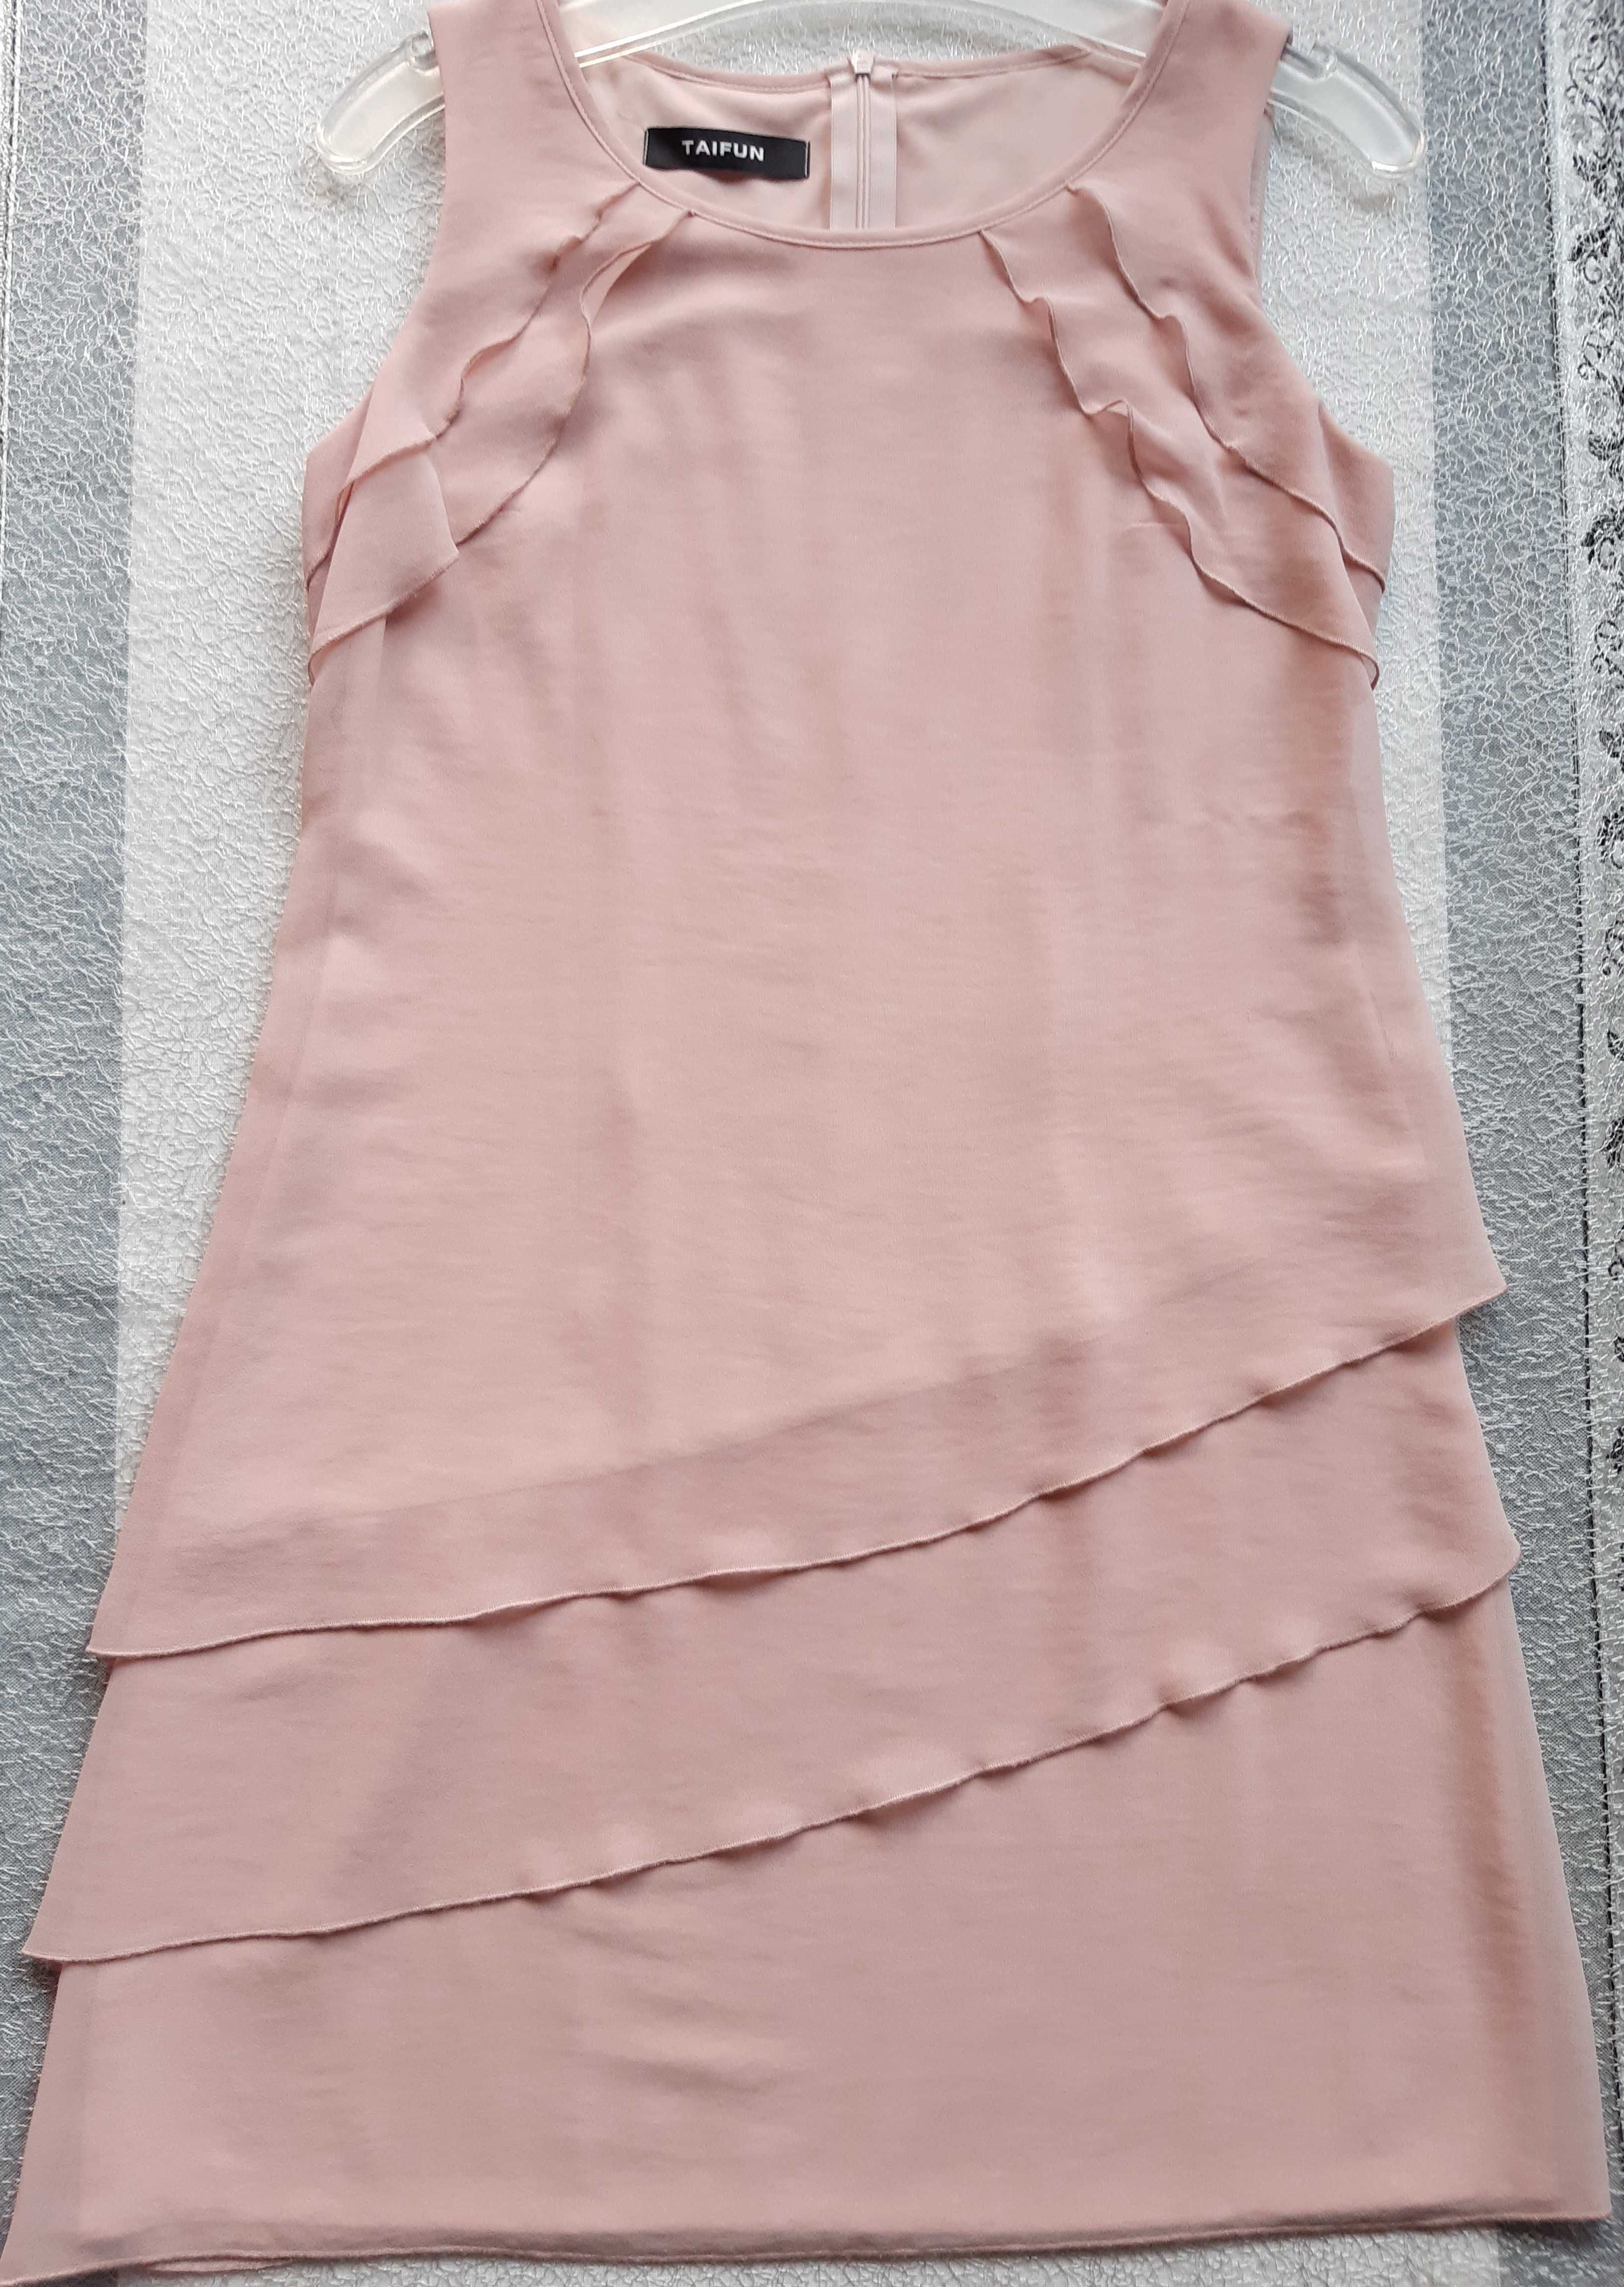 Sukienka Gerry Weber "Taifun" krótka pudr. róż przed kolano rzm.36/S/8